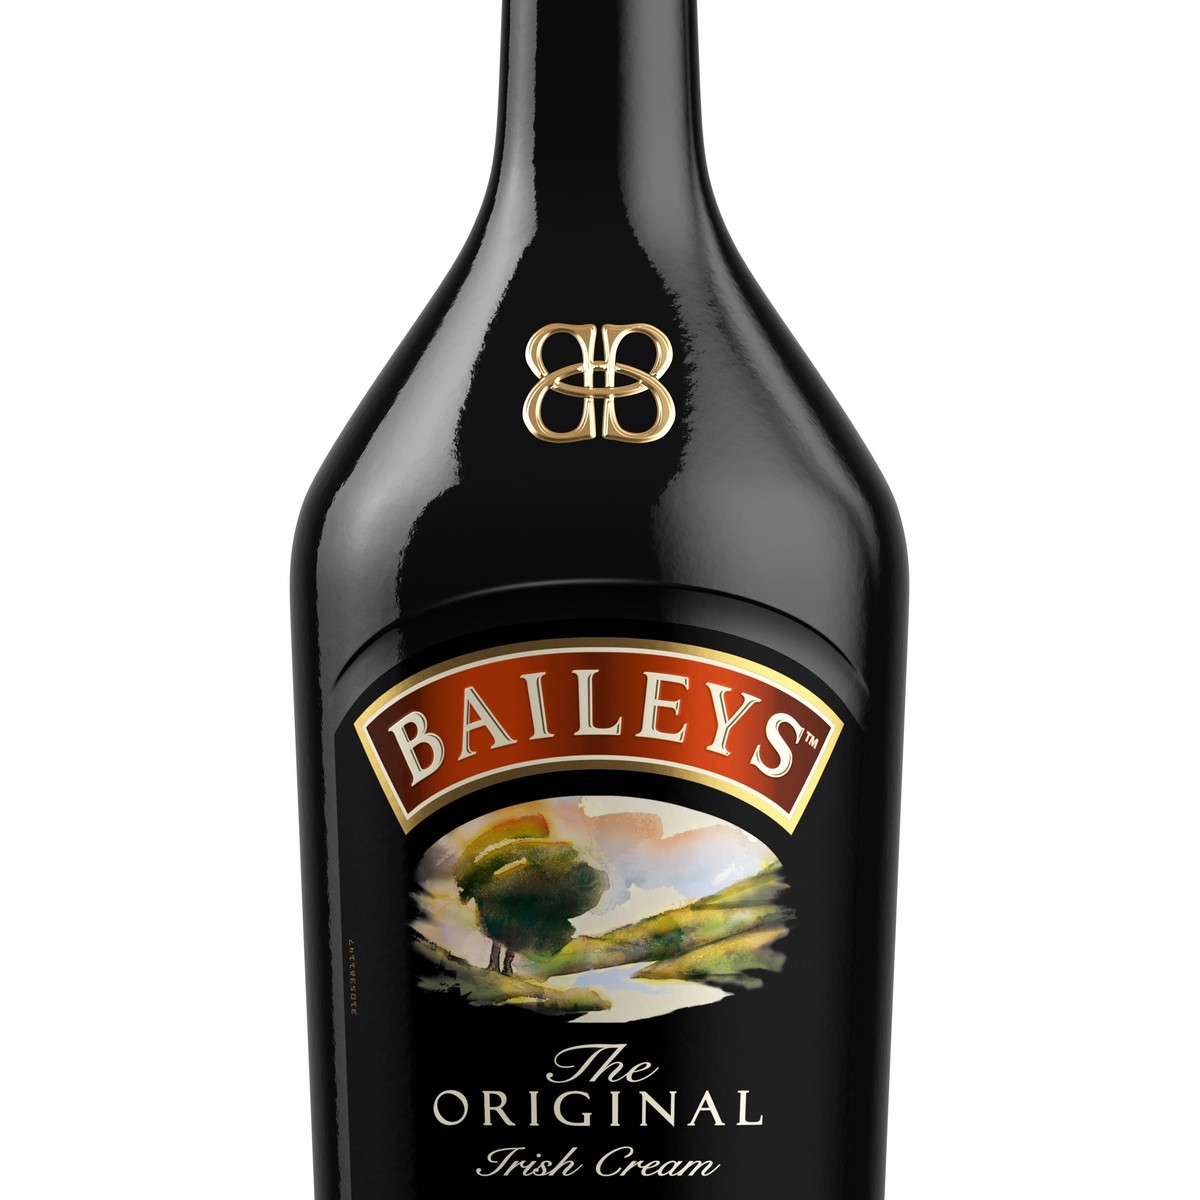 Baileys Original Irish Cream Liqueur 1lt Bottle